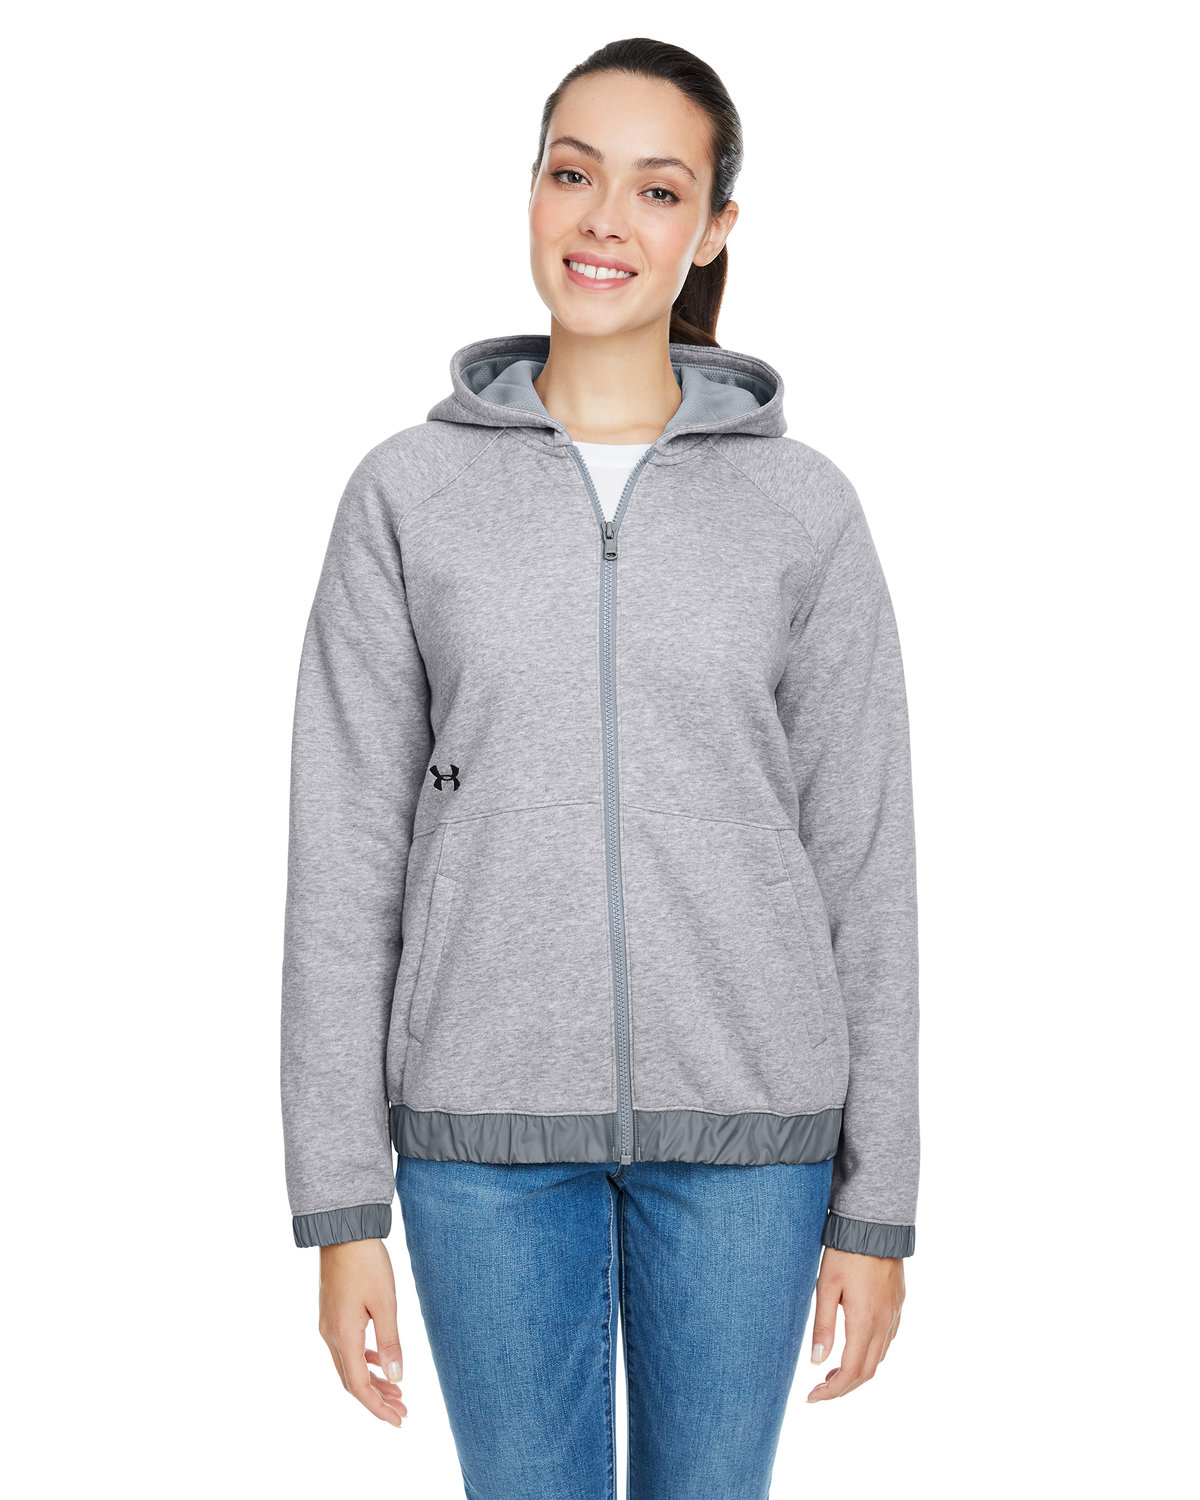 Buy Ladies Hustle Full-Zip Hooded Sweatshirt - Under Armour Online at ...